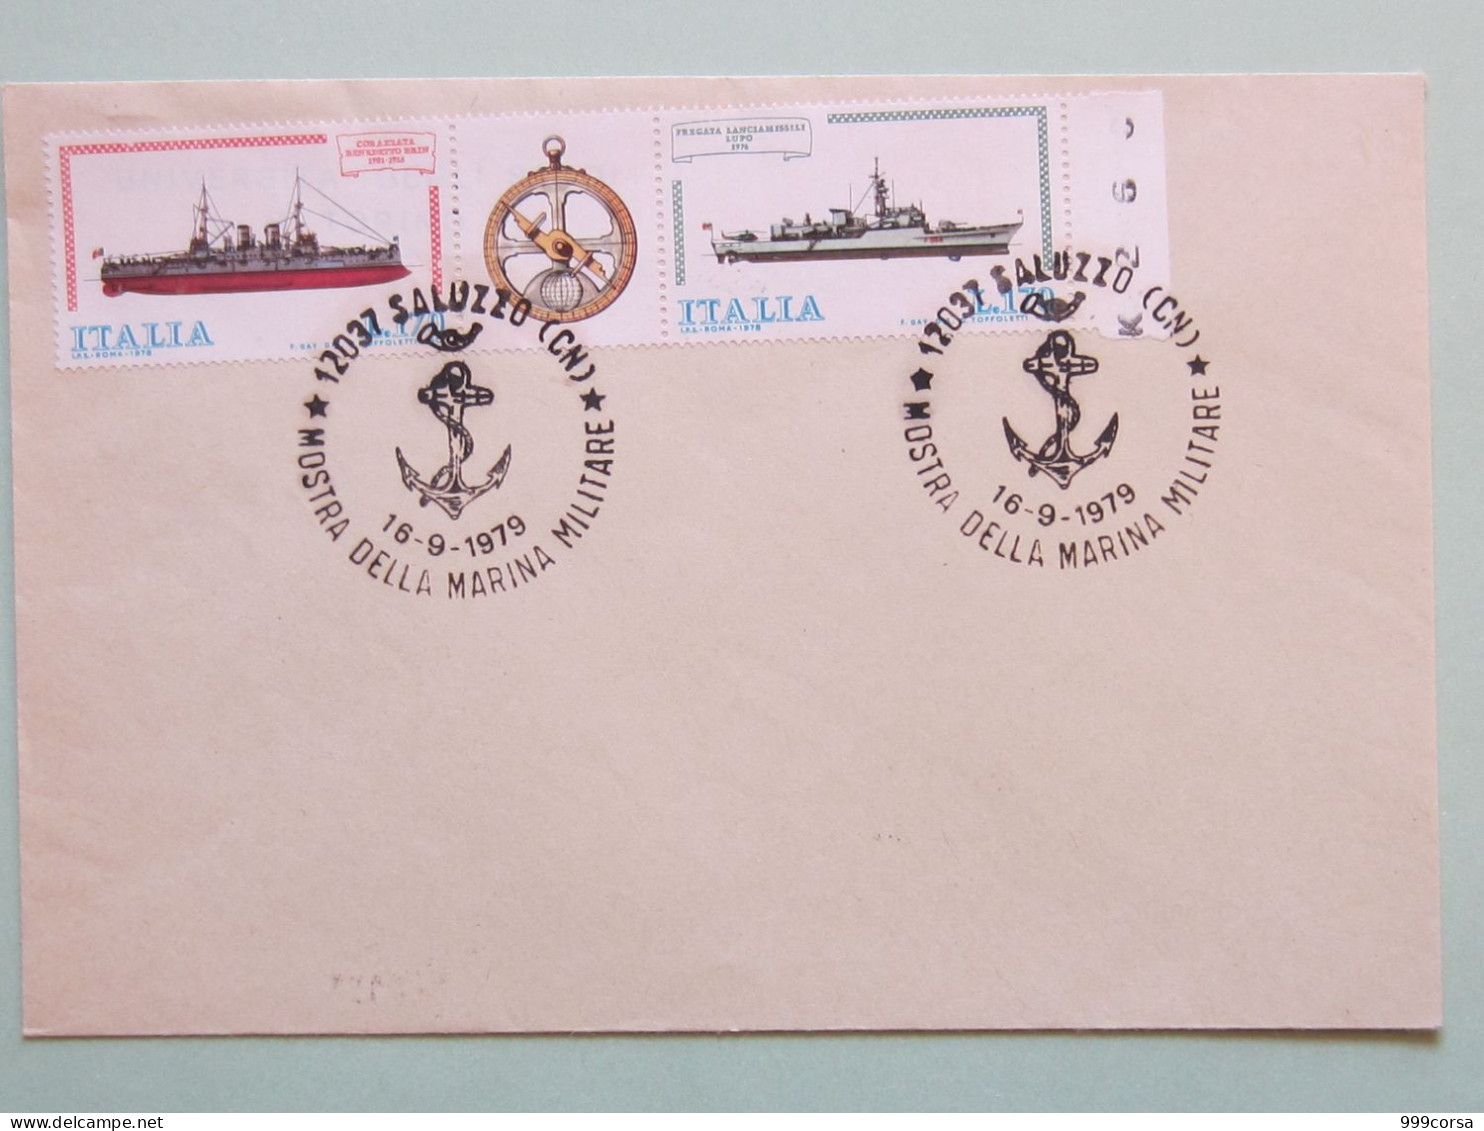 Militari, Annullo Speciale Mostra Marina Militare (àncora) Saluzzo 16-9-1979, Navi - 1971-80: Poststempel